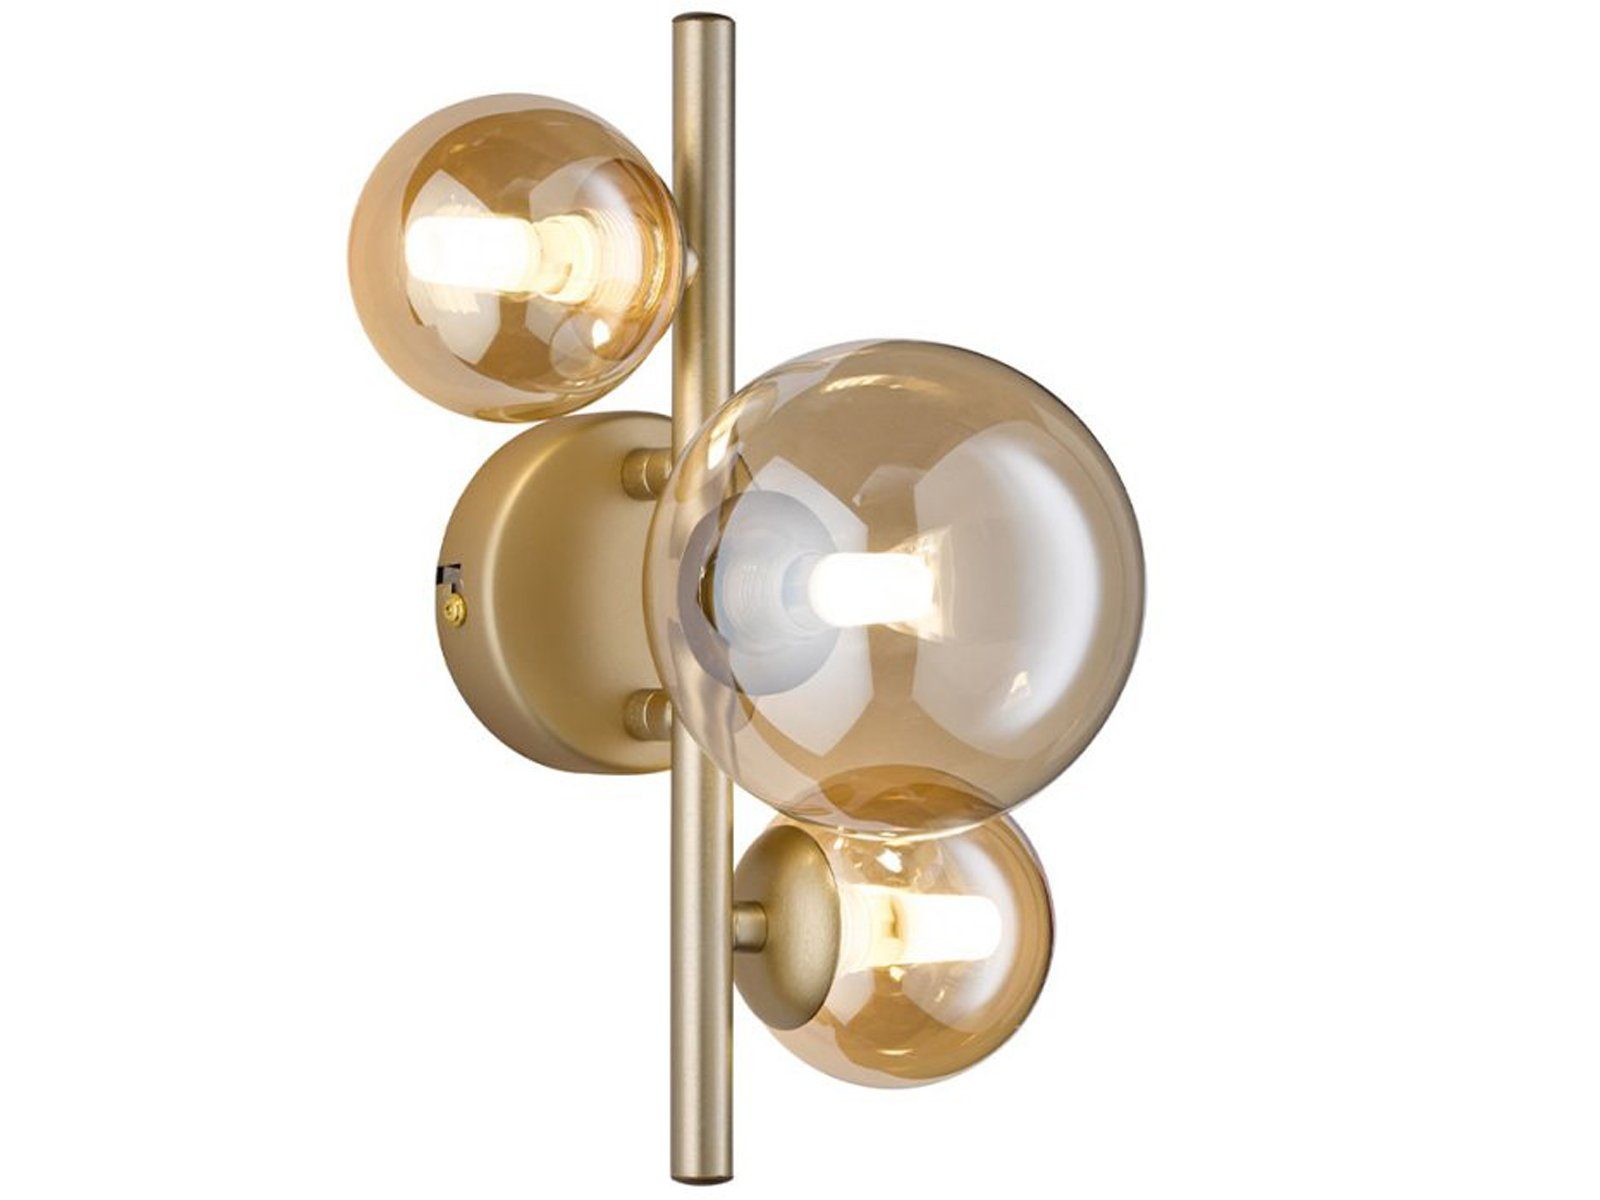 innen, WOFI 28cm matt, Glas-kugel, Amberfarben Gold Gold Warmweiß, Wandleuchte, Lampe wechselbar, 4x Höhe LED ausgefallene LED Bubble matt /